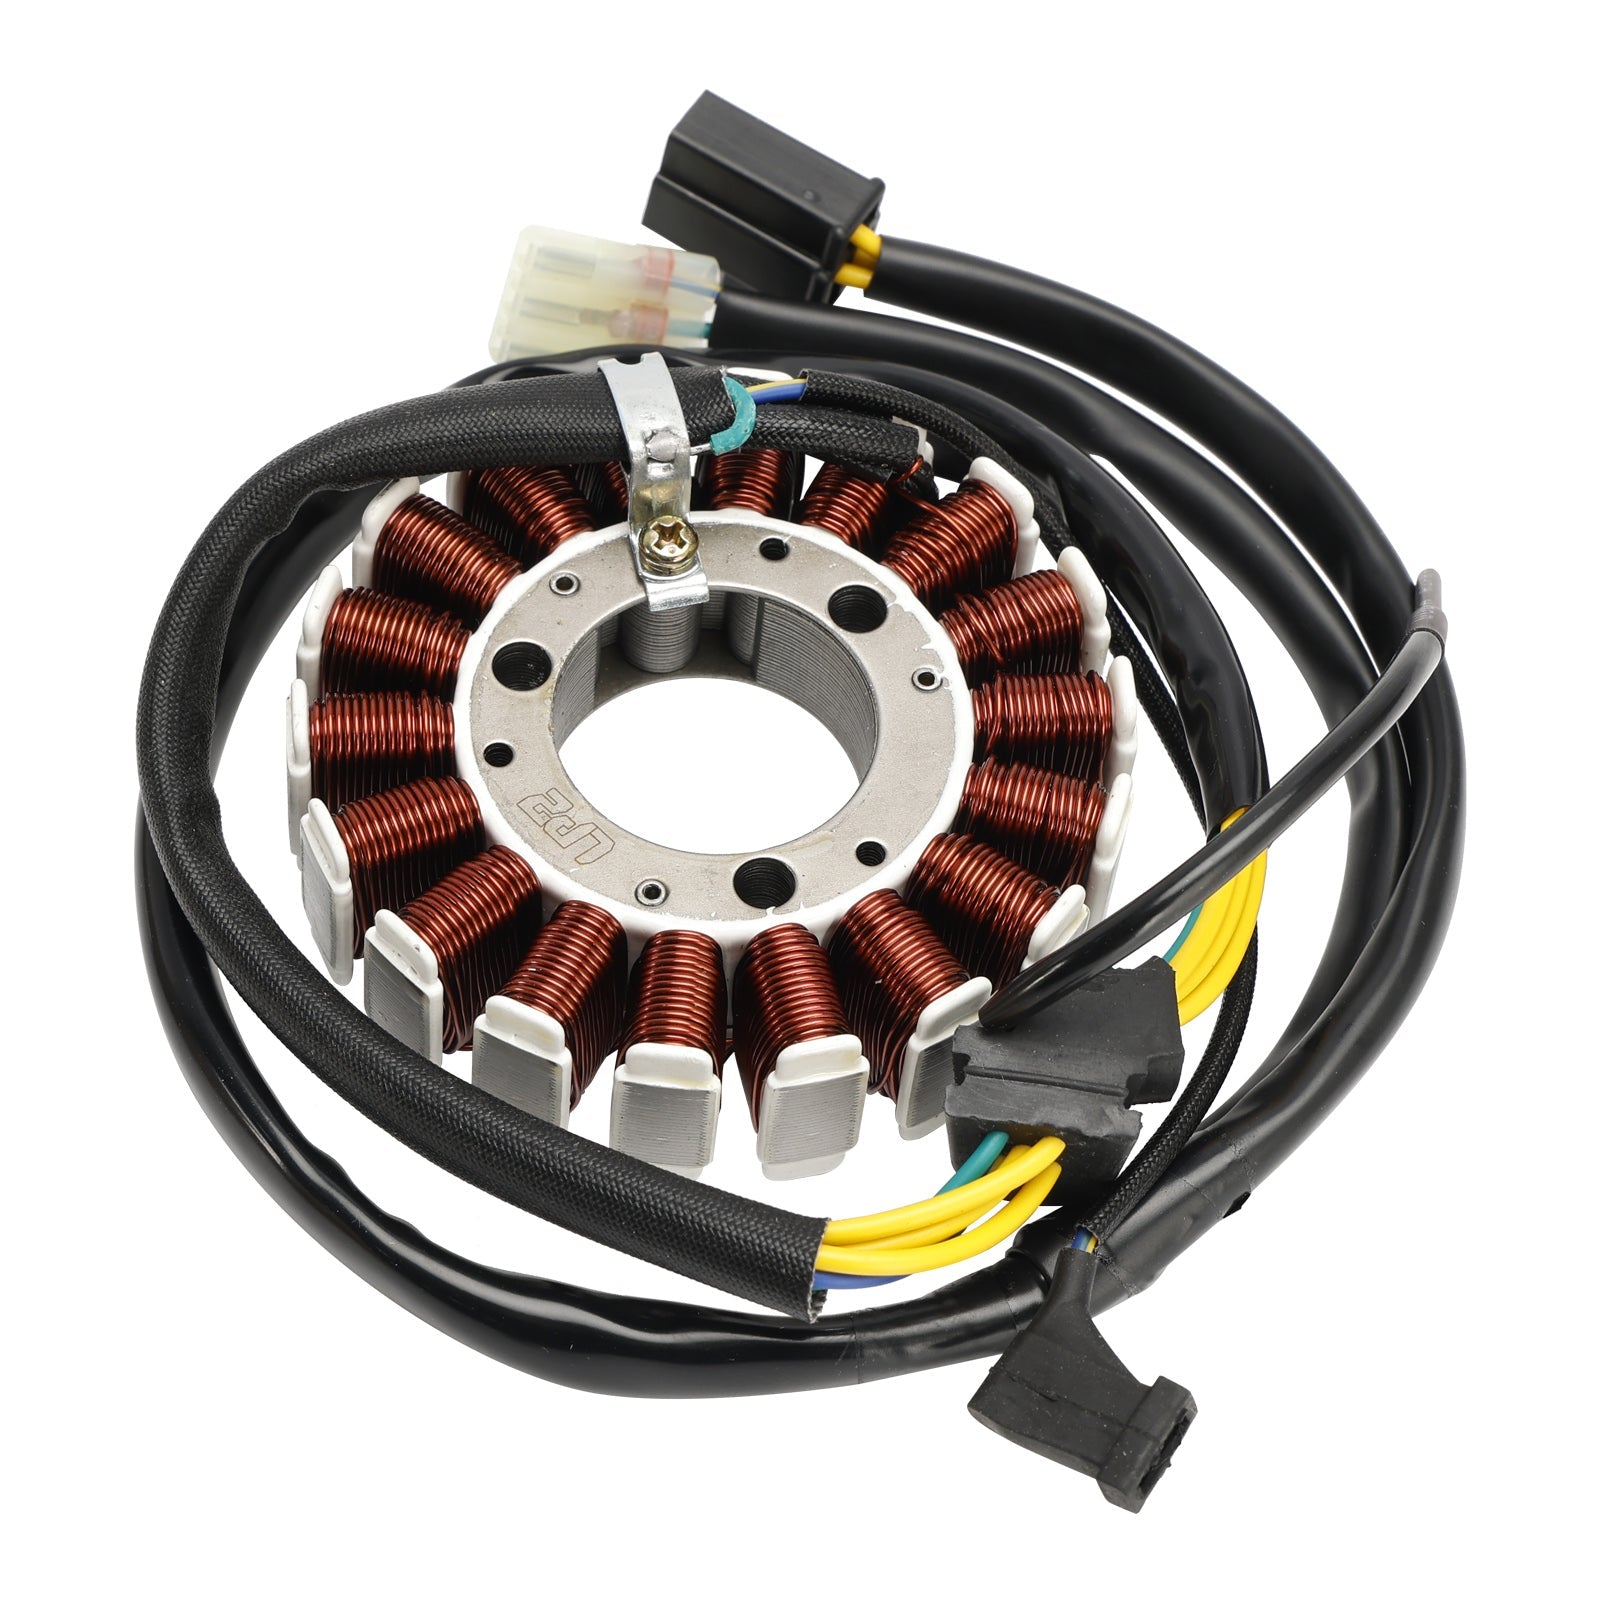 Stator de bobine magnétique + régulateur de tension + joint Assy pour Honda XR 230 2005-2009 CRF 230 L 2008 2009